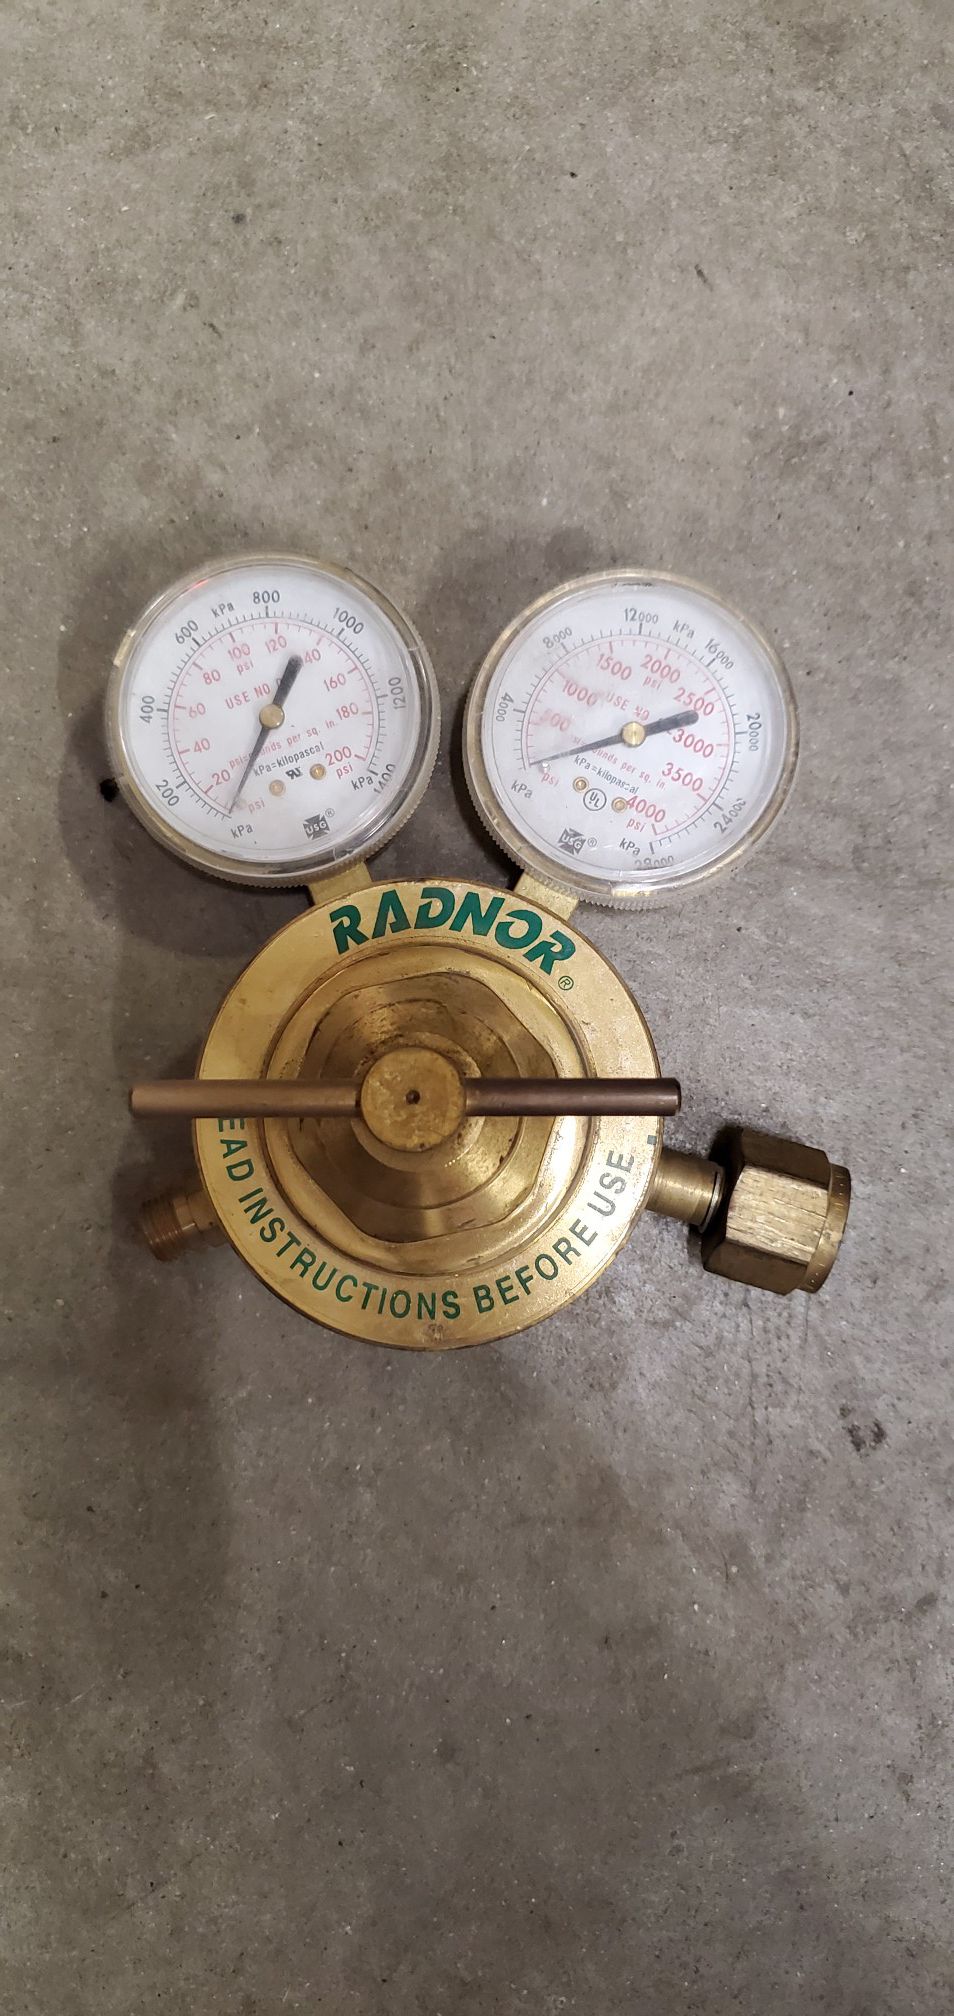 Radnor gauges